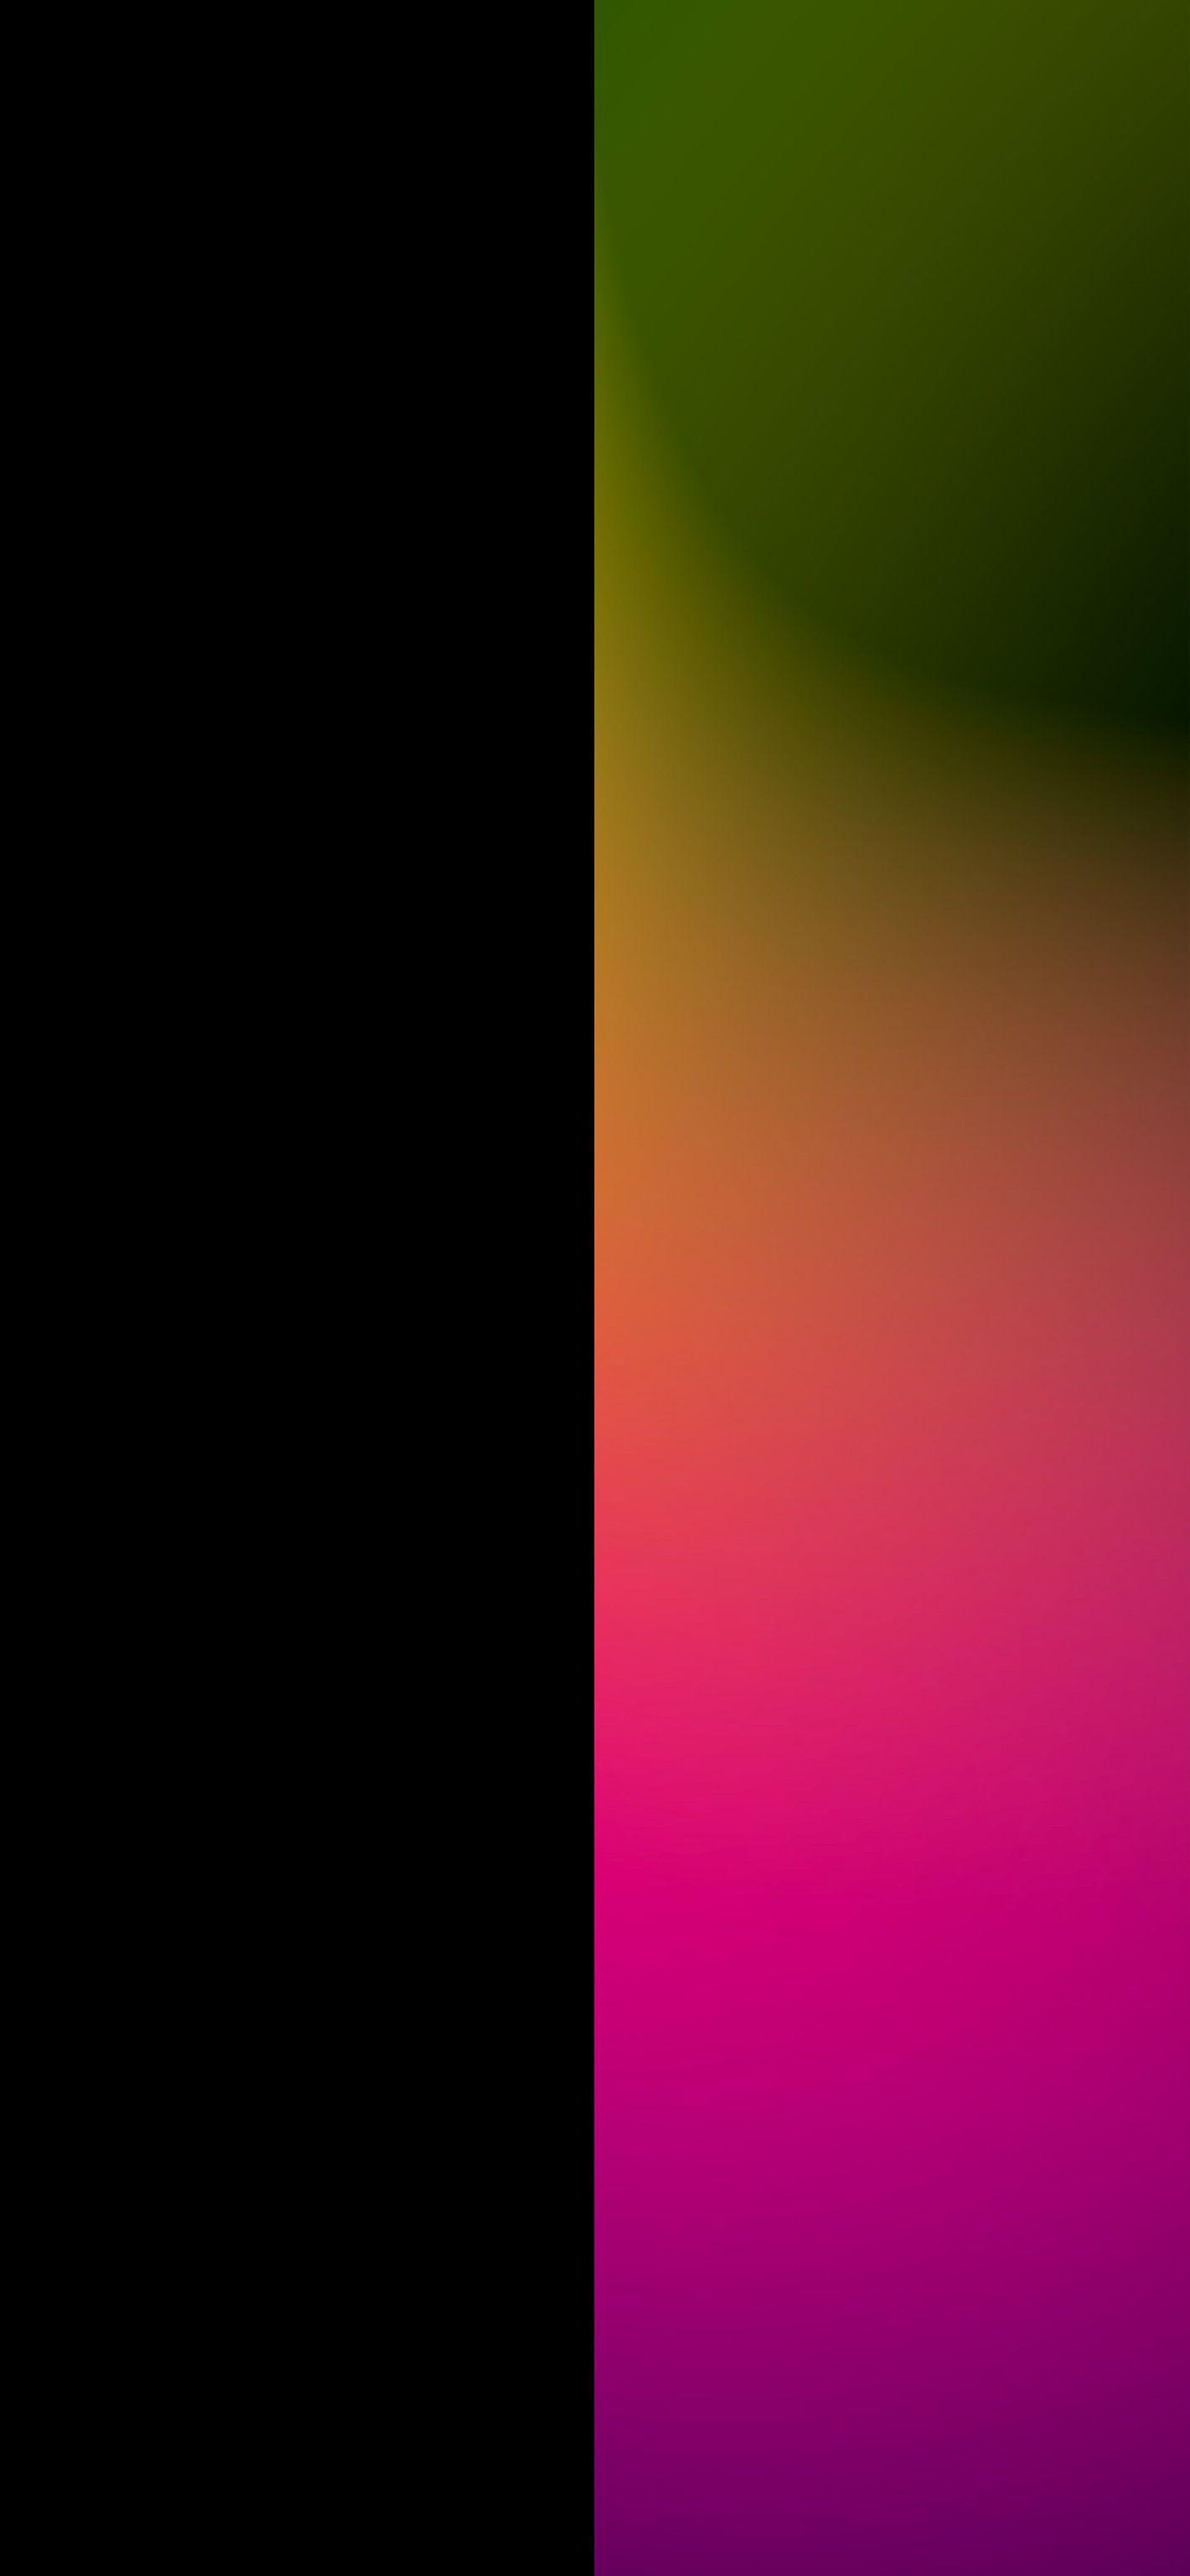 Hình nền hai màu sắc của chúng tôi là lựa chọn hoàn hảo để tạo nên phong cách độc đáo cho iPhone của bạn. Với sự kết hợp hài hòa giữa hai gam màu sáng tạo, chúng tôi cam đoan sẽ mang đến cho bạn sự khác biệt và nổi bật trong mắt mọi người.